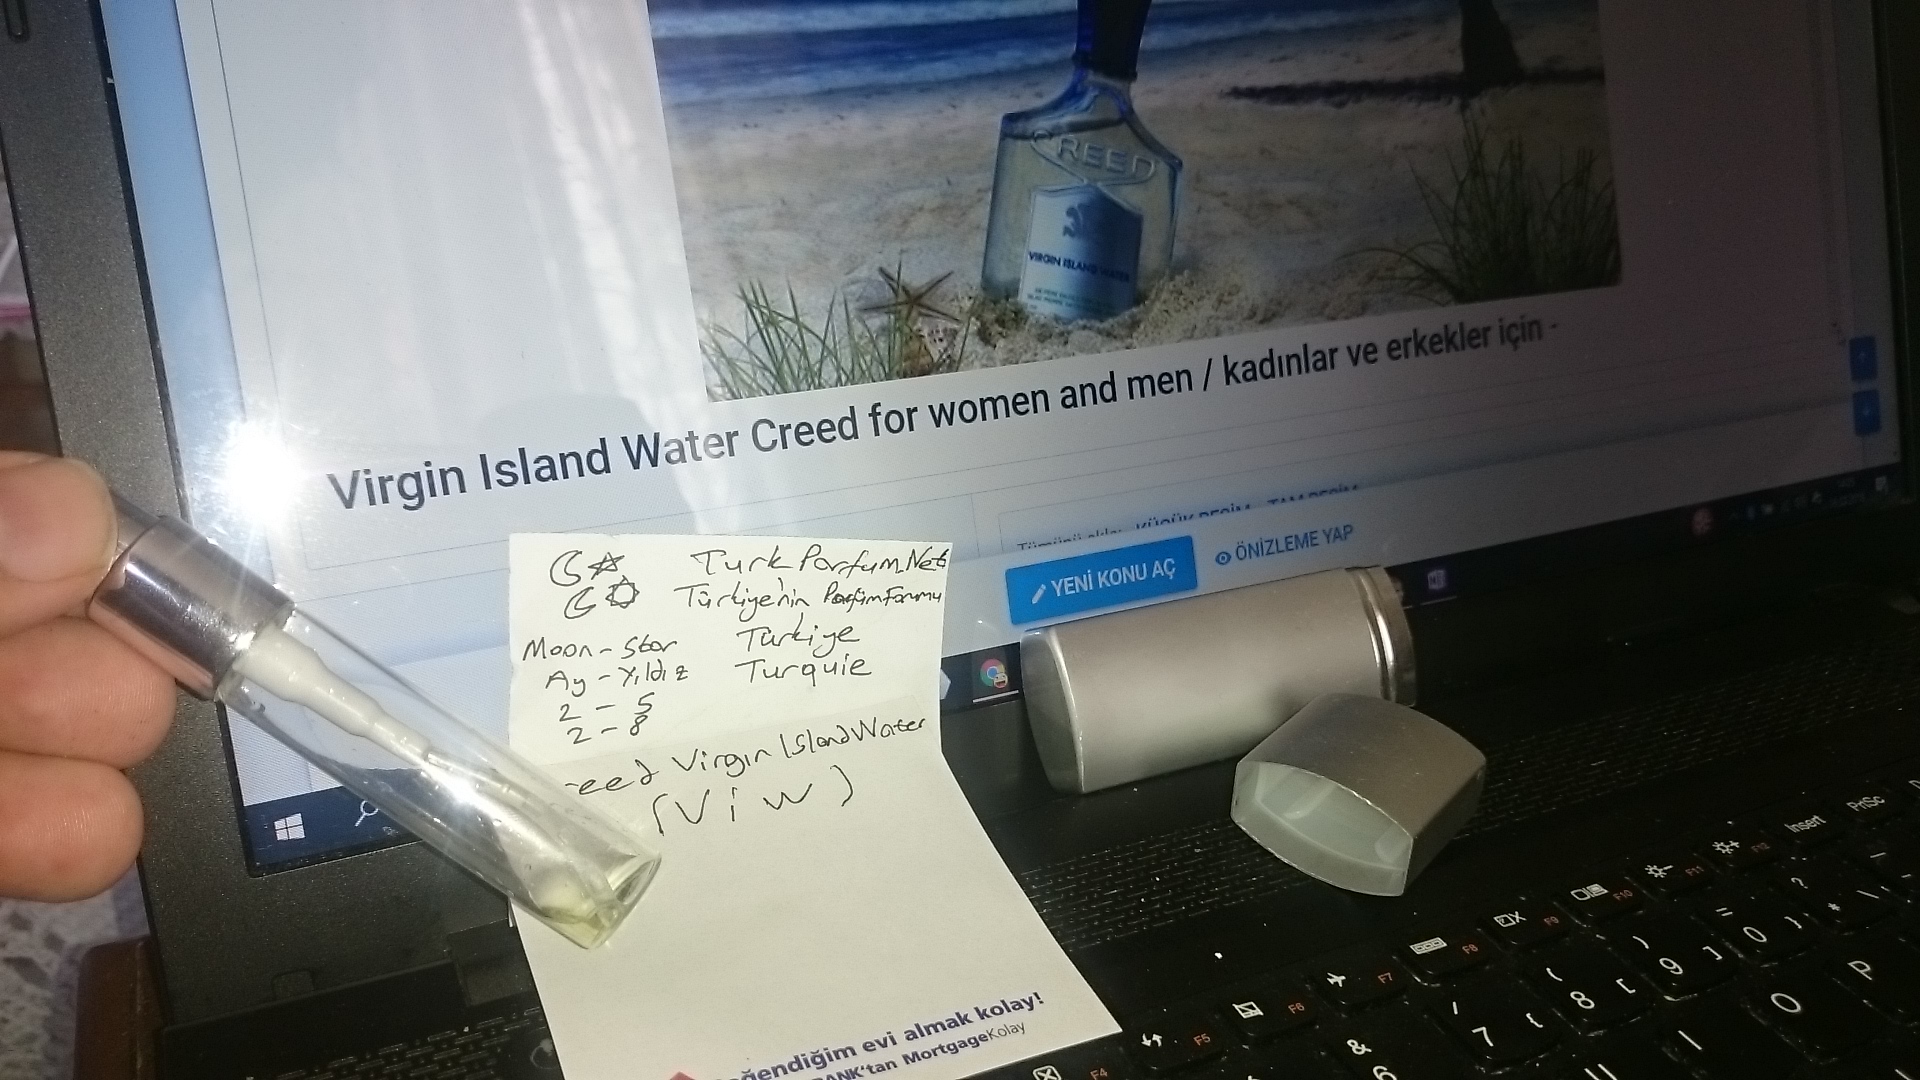 Virgin Island Water Creed for women and men baykalbul dekant şişesi özel DSC_1605.JPG